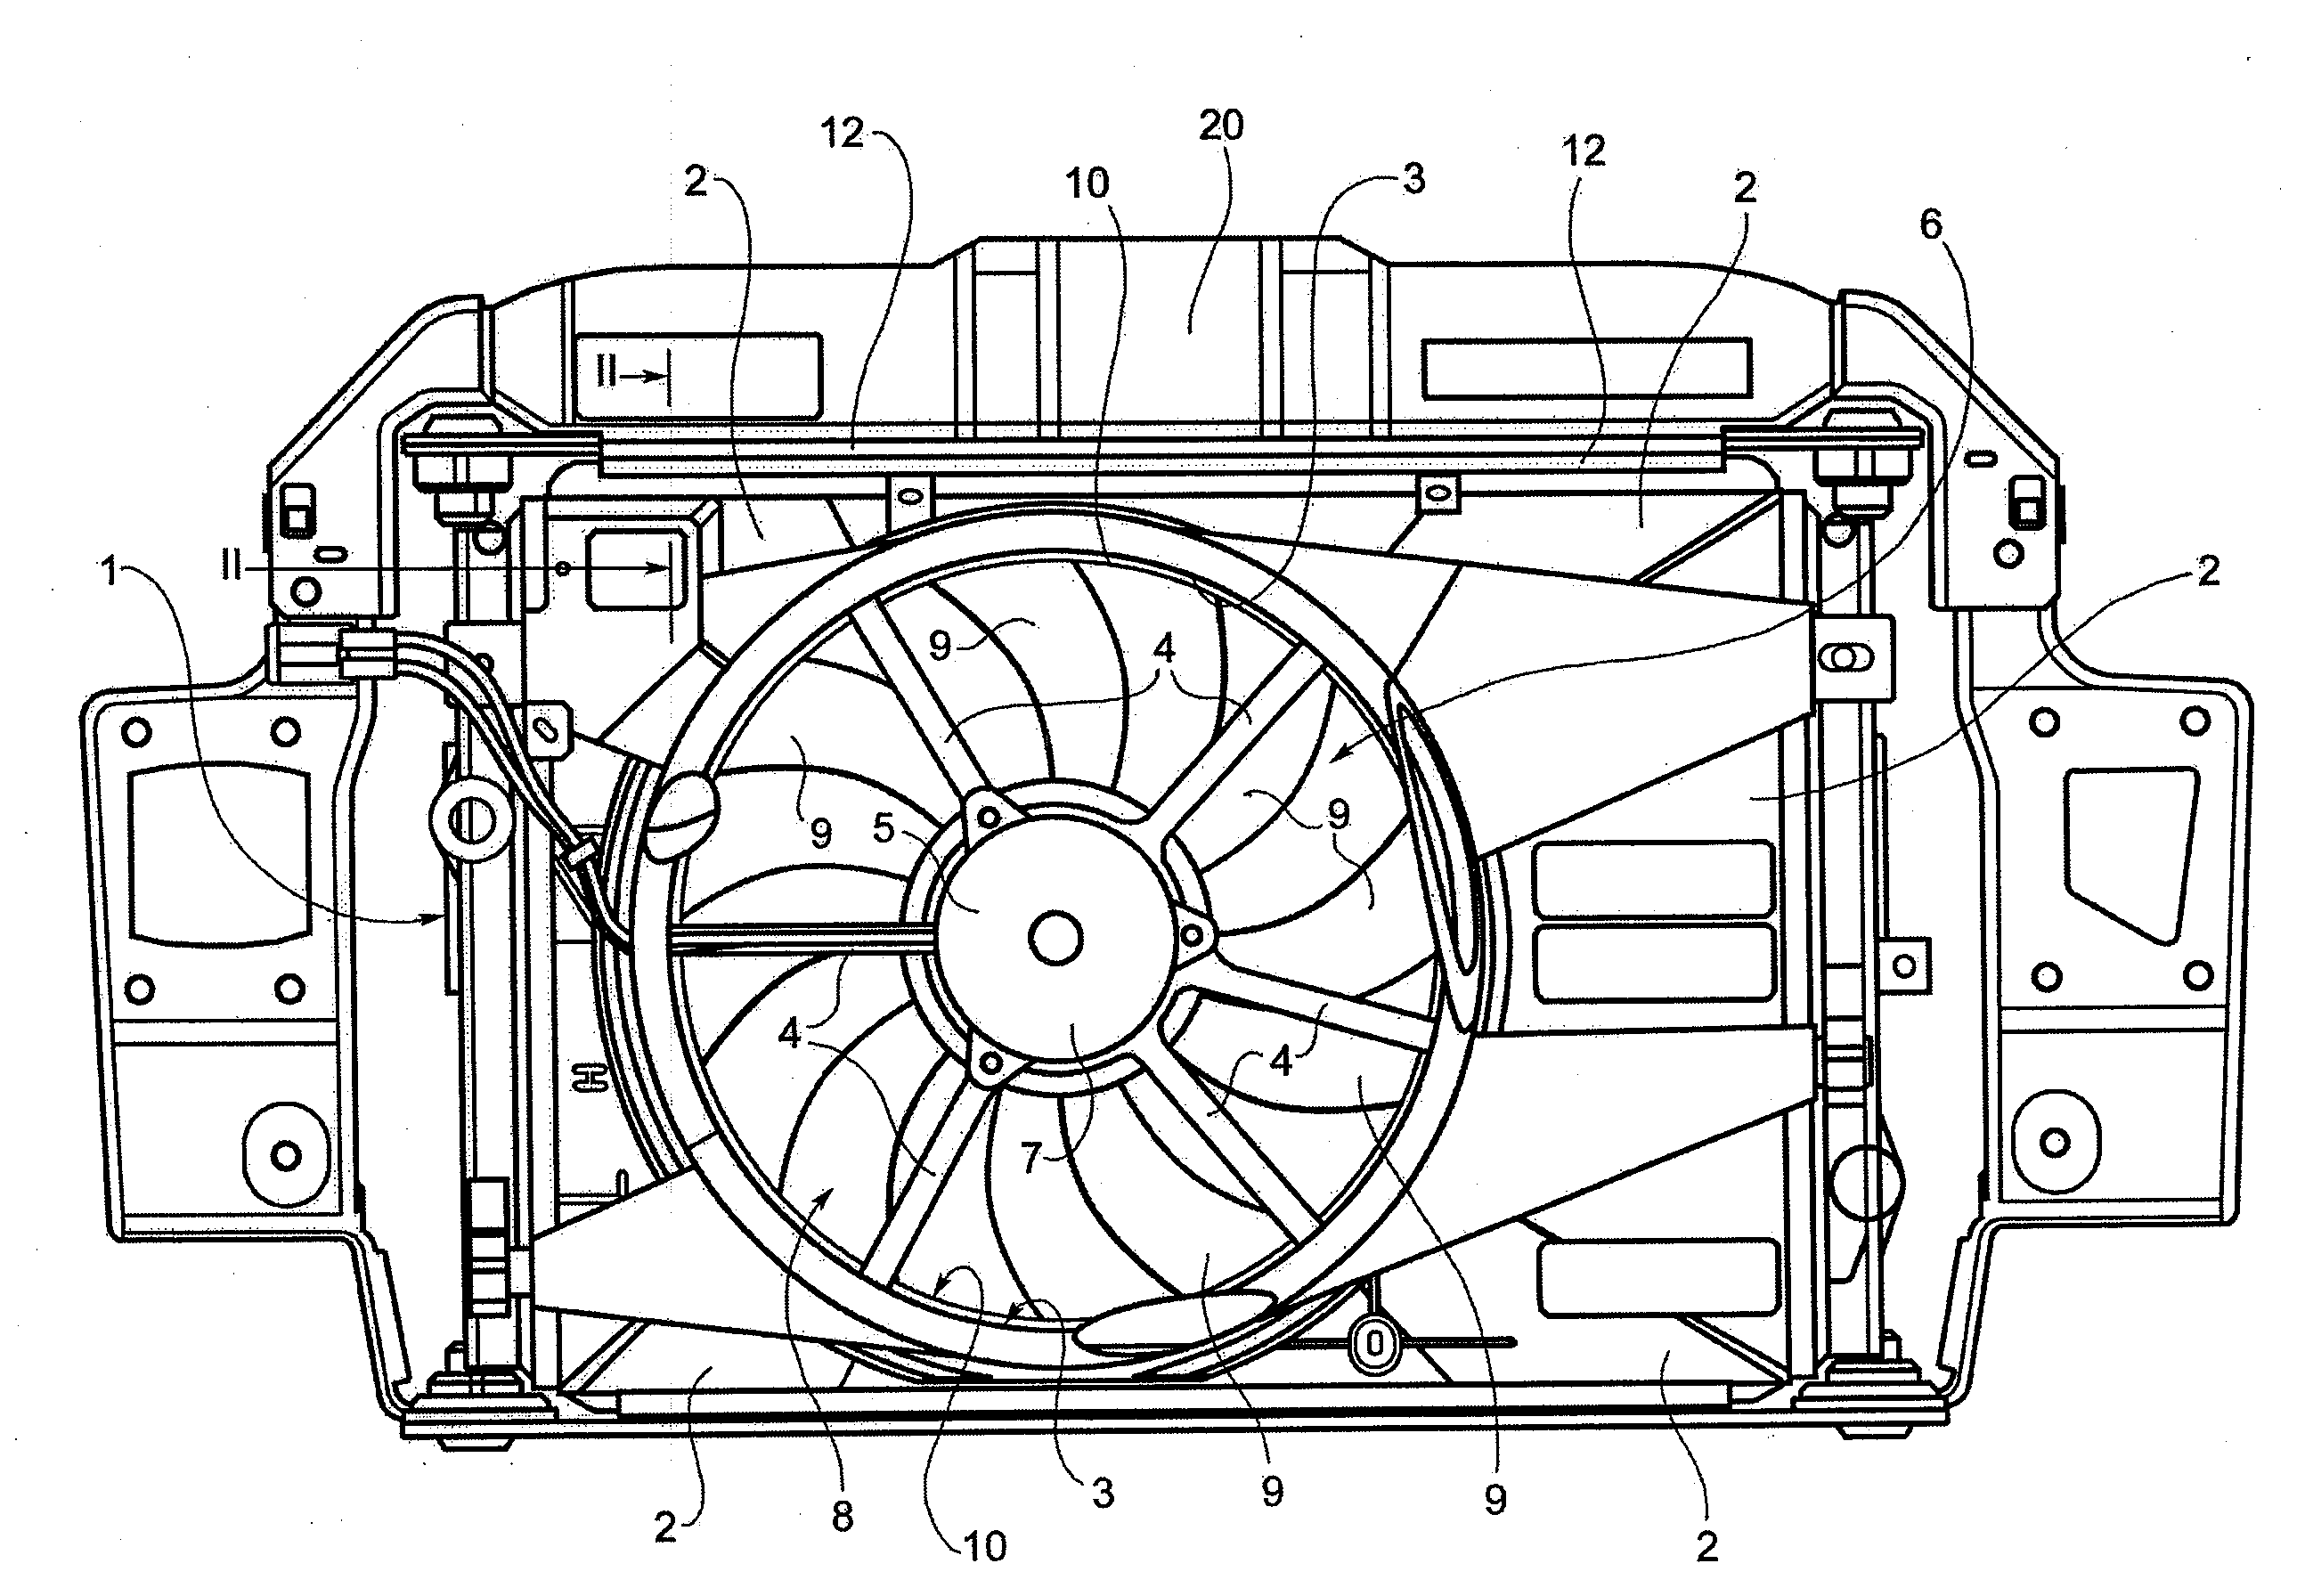 Fan unit for a heat exchanger